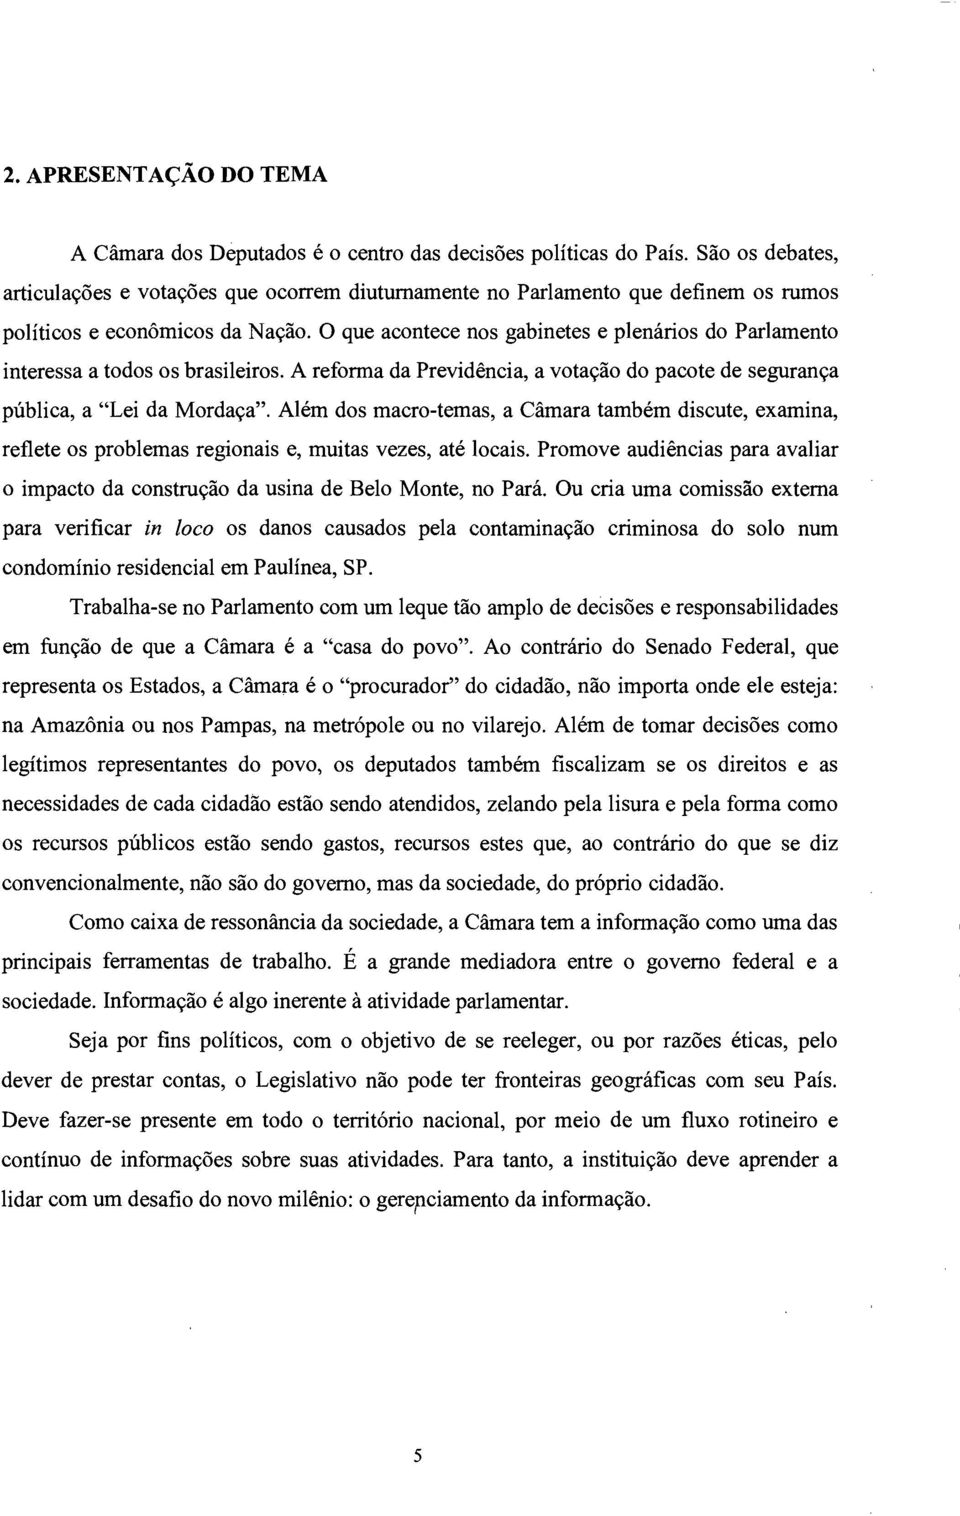 O que acontece nos gabinetes e plenários do Parlamento interessa a todos os brasileiros. A reforma da Previdência, a votação do pacote de segurança pública, a "Lei da Mordaça".